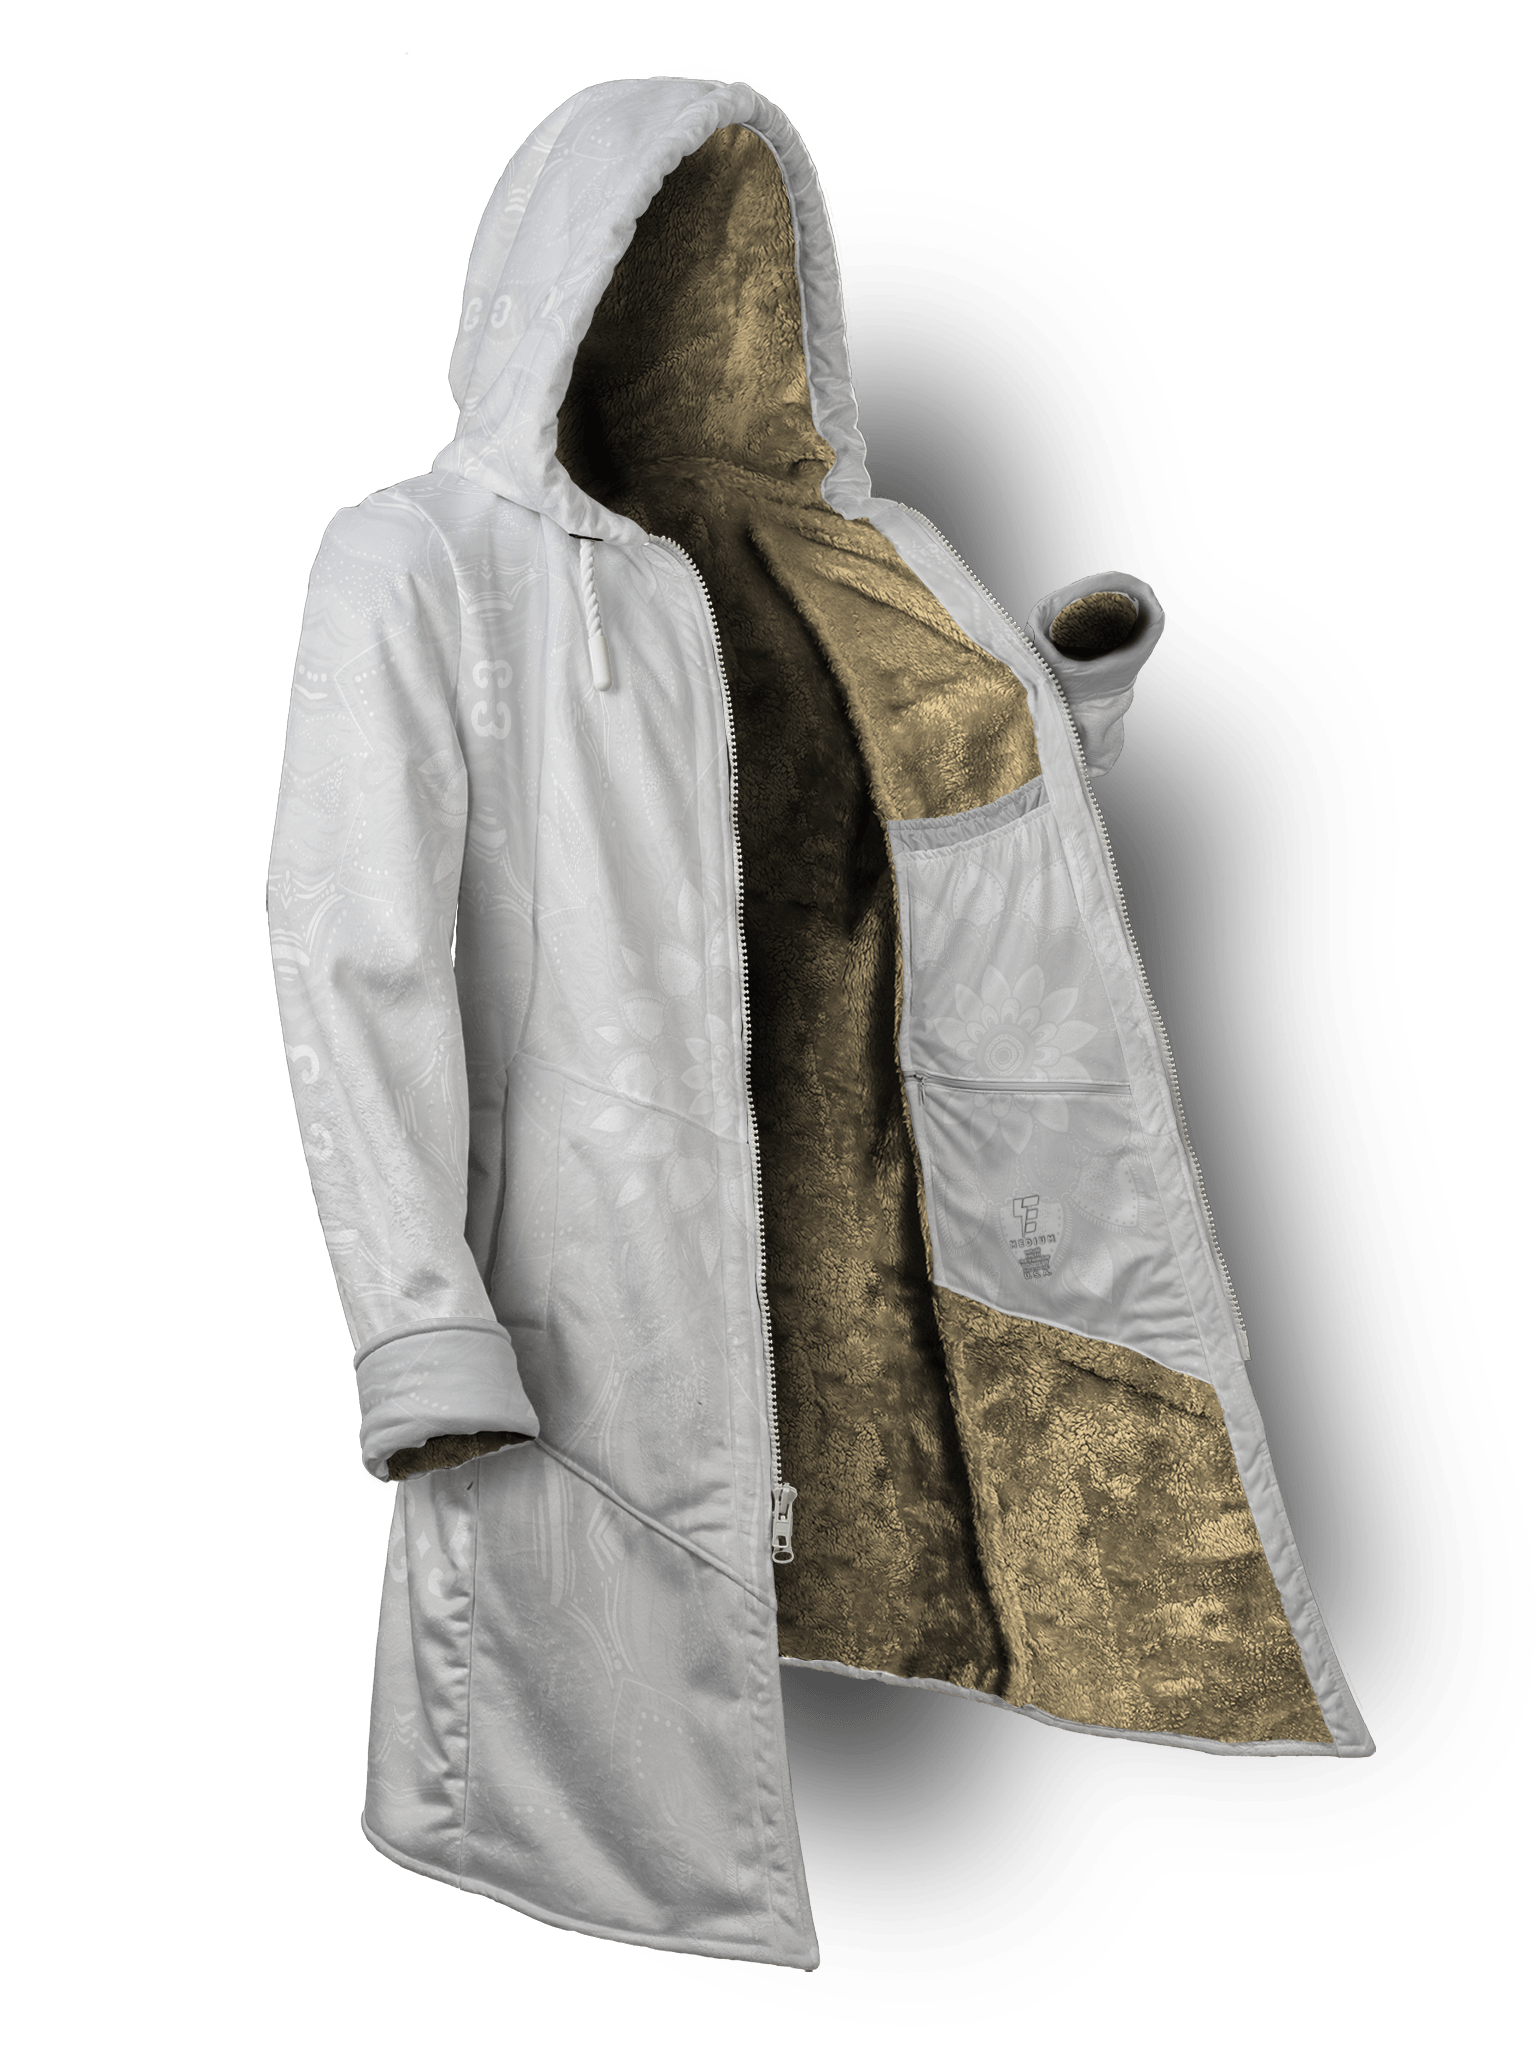 Rosebud White Cyber Cloak Cyber Cloak TCG Long Sleeve-No Bag XX-Small Beige Sherpa